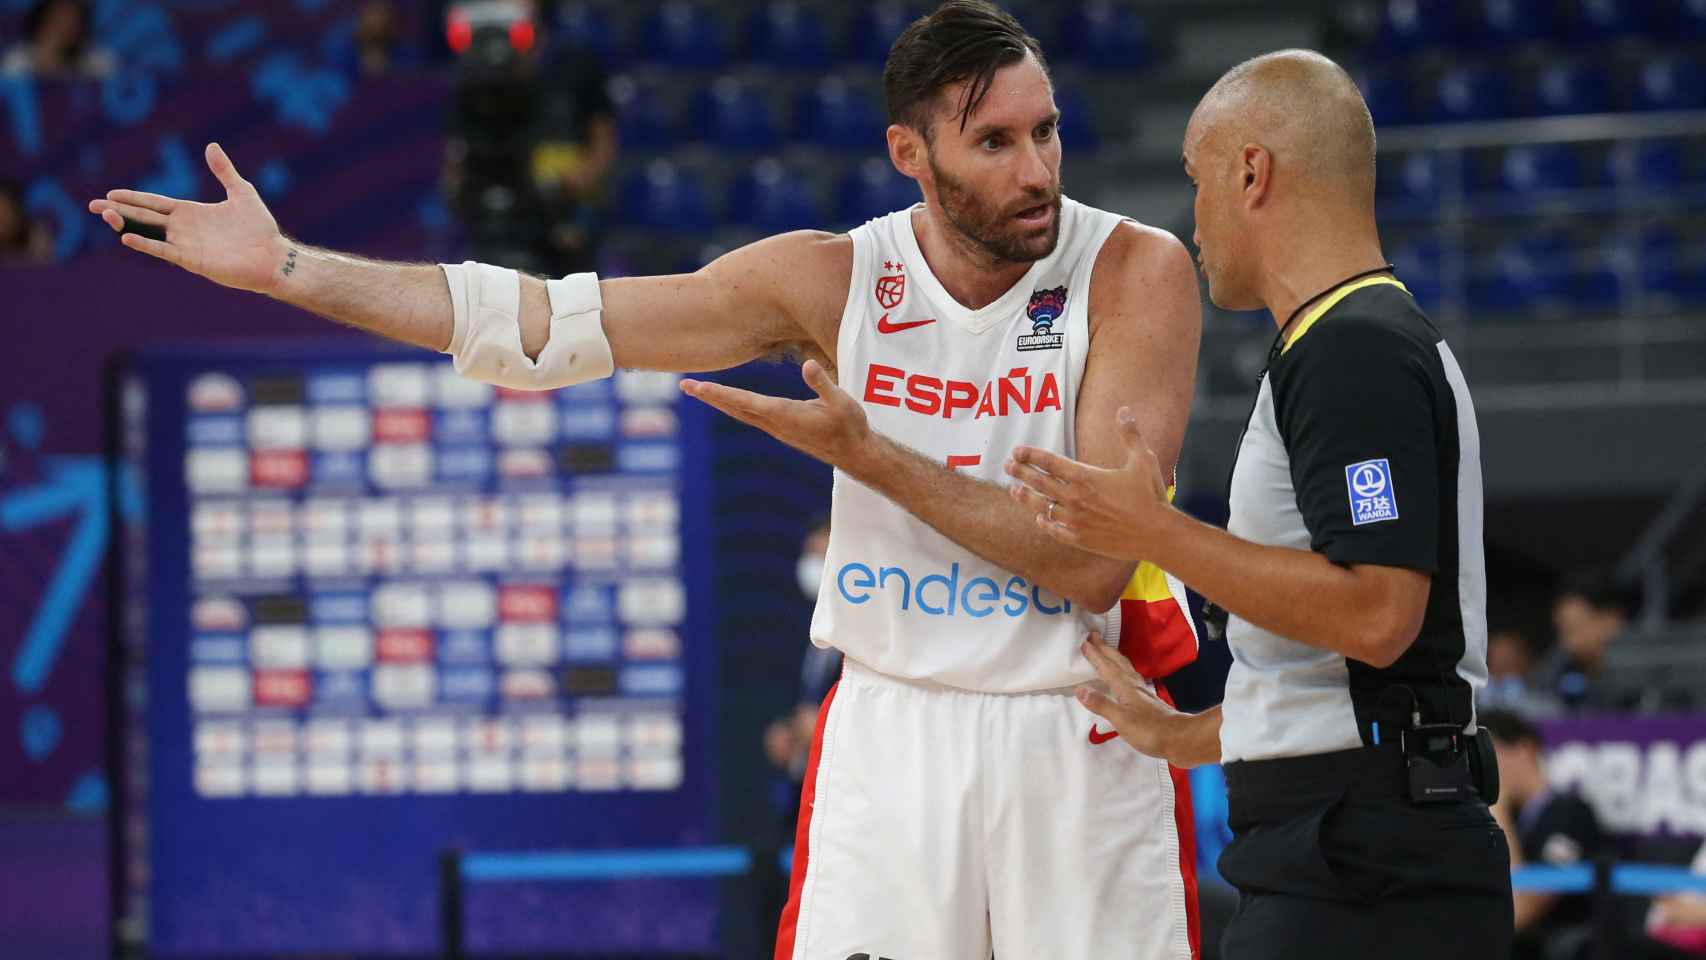 España naufraga ante Bélgica y se complica los cruces en el Eurobasket thumbnail